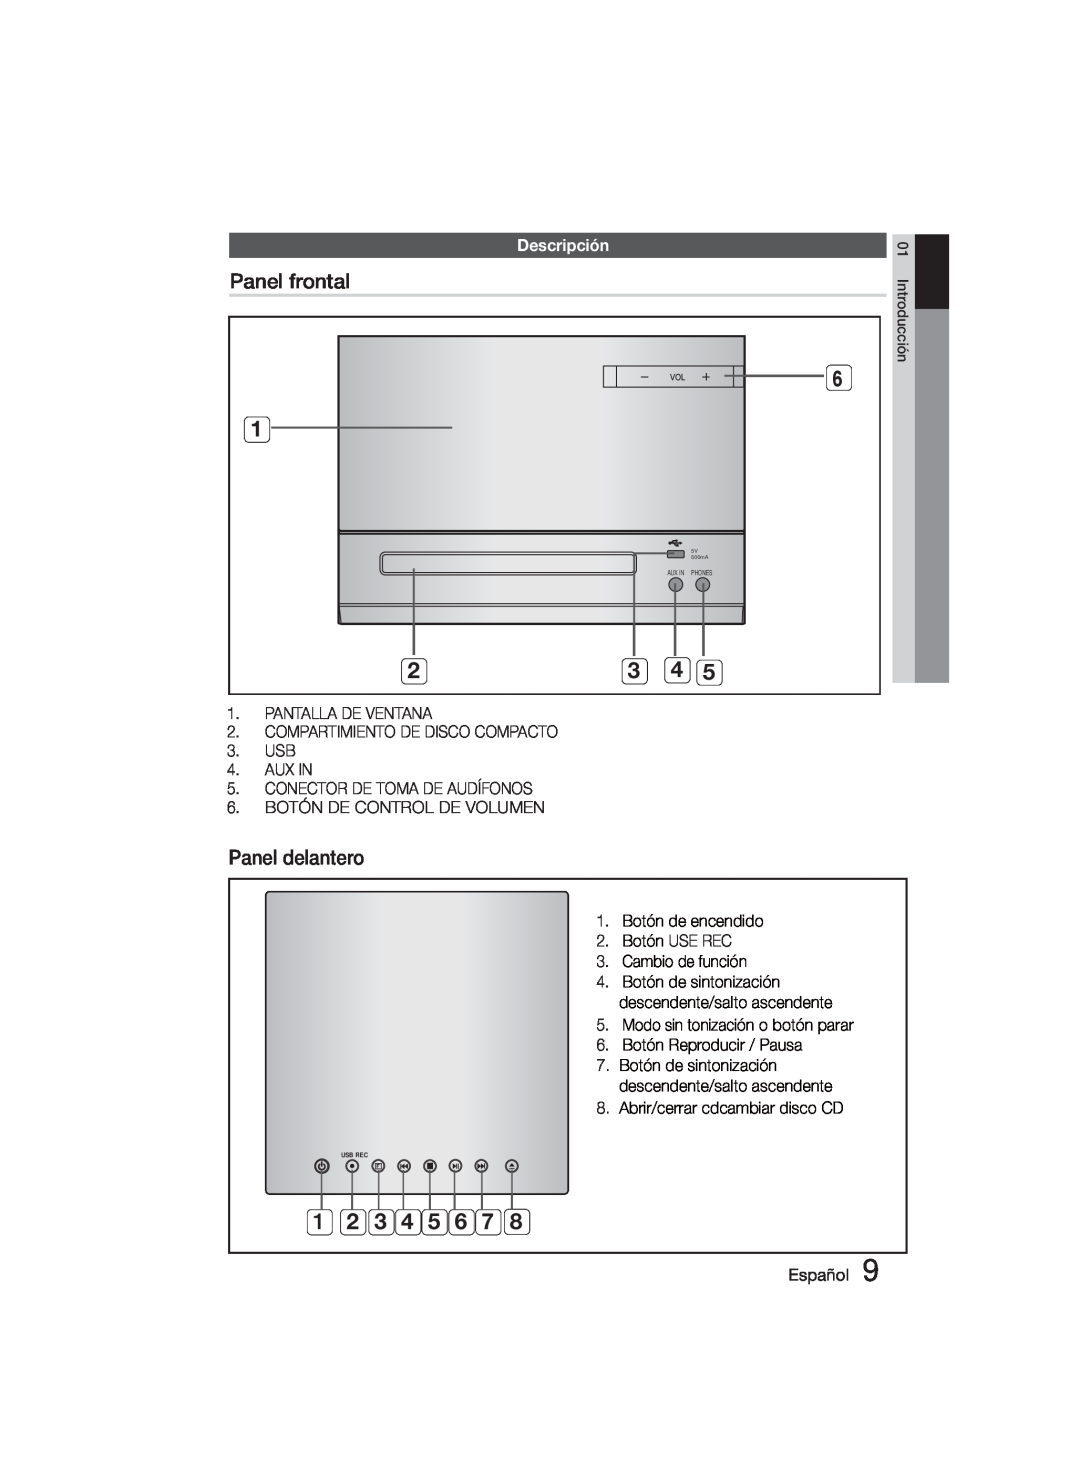 Samsung MM-D330D/ZF Panel frontal, Panel delantero, Descripción, AUX IN 5. CONECTOR DE TOMA DE AUDÍFONOS, Botón USE REC 